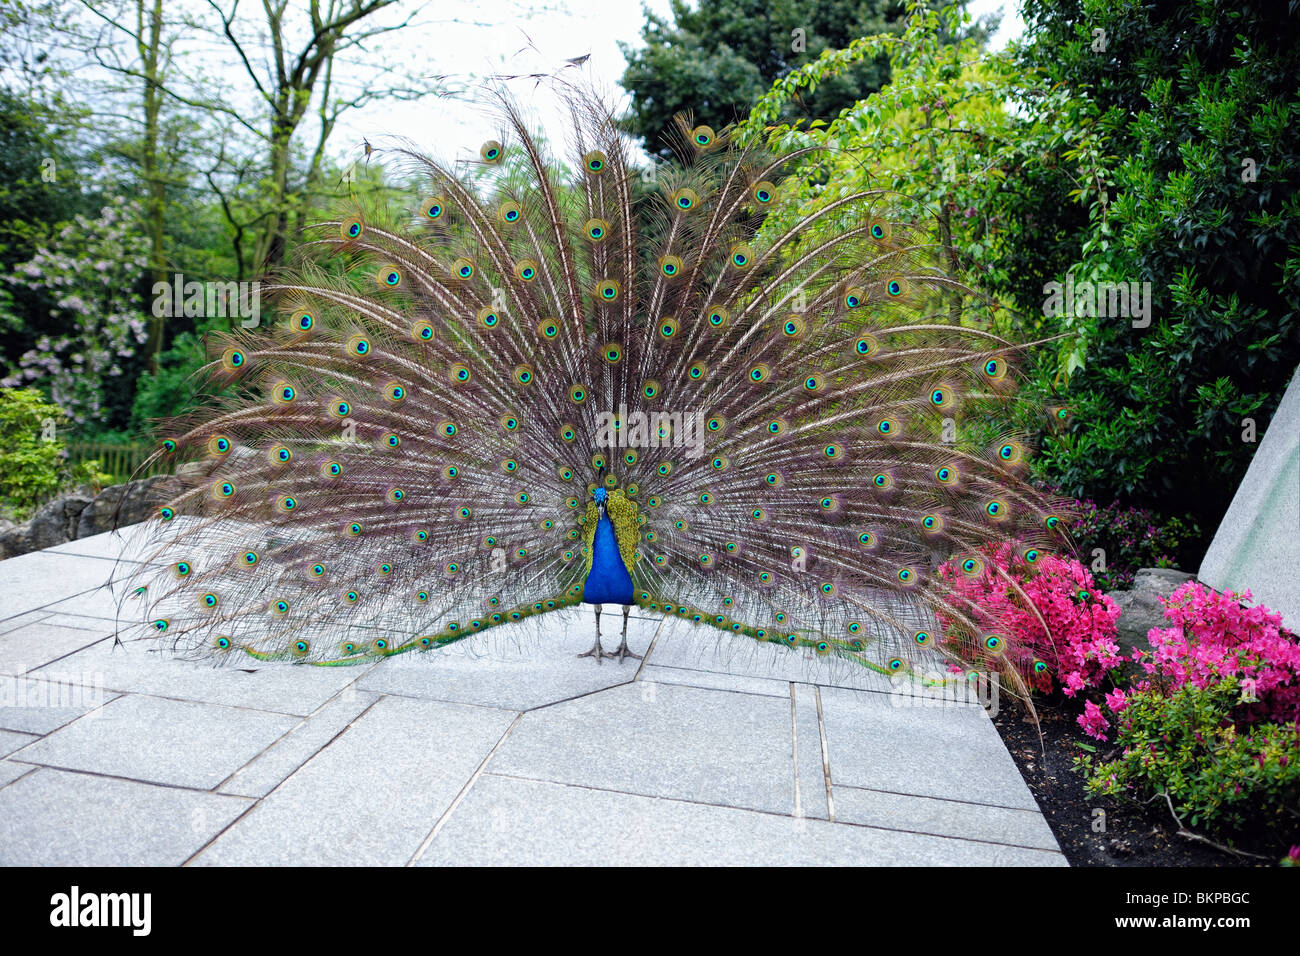 (Pavo cristatus paon) affichant sa queue ornée de plumes dans un jardin Banque D'Images